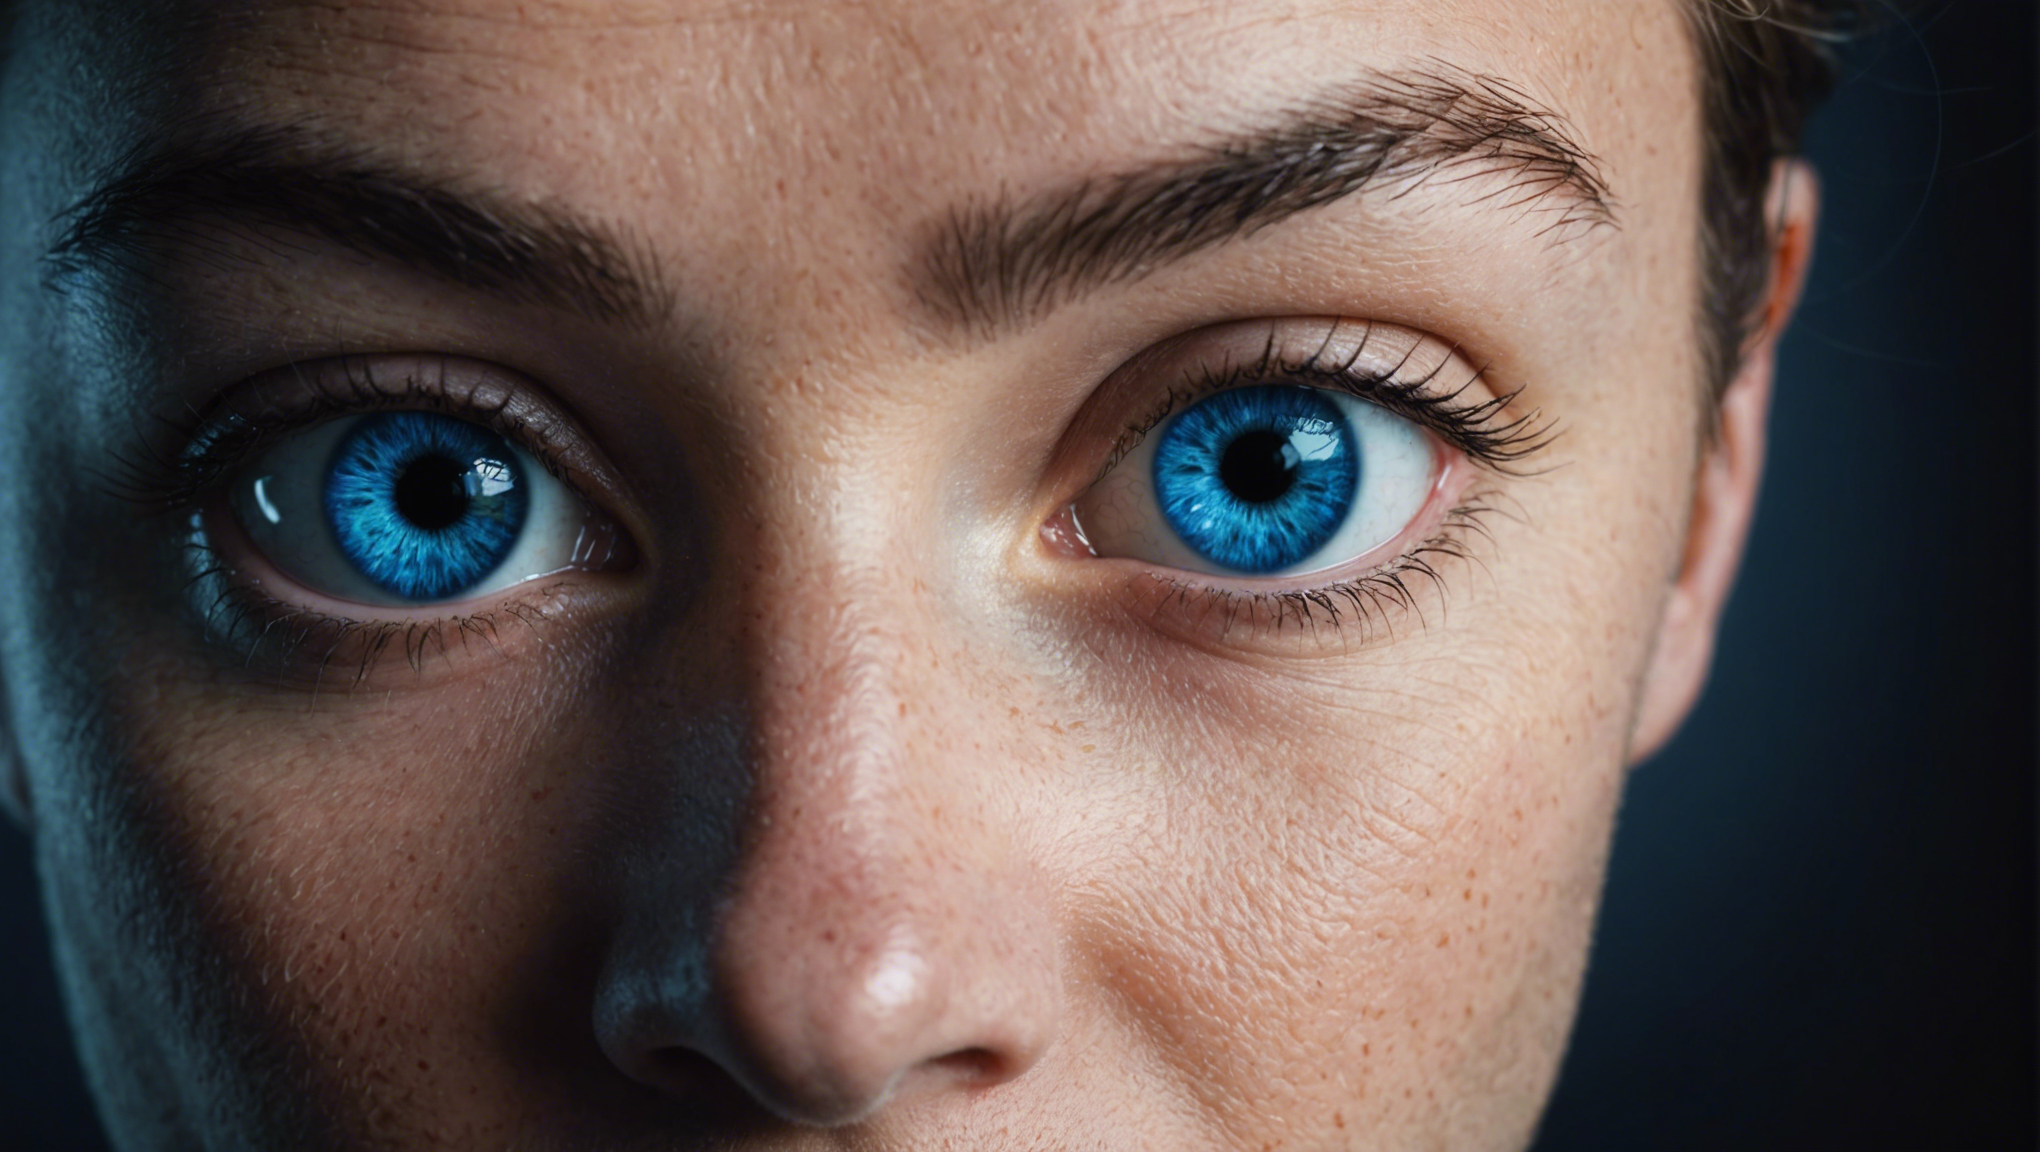 découvrez l'impact de la lumière bleue sur nos yeux et comment elle peut affecter notre vision. apprenez comment protéger vos yeux des effets néfastes de la lumière bleue.